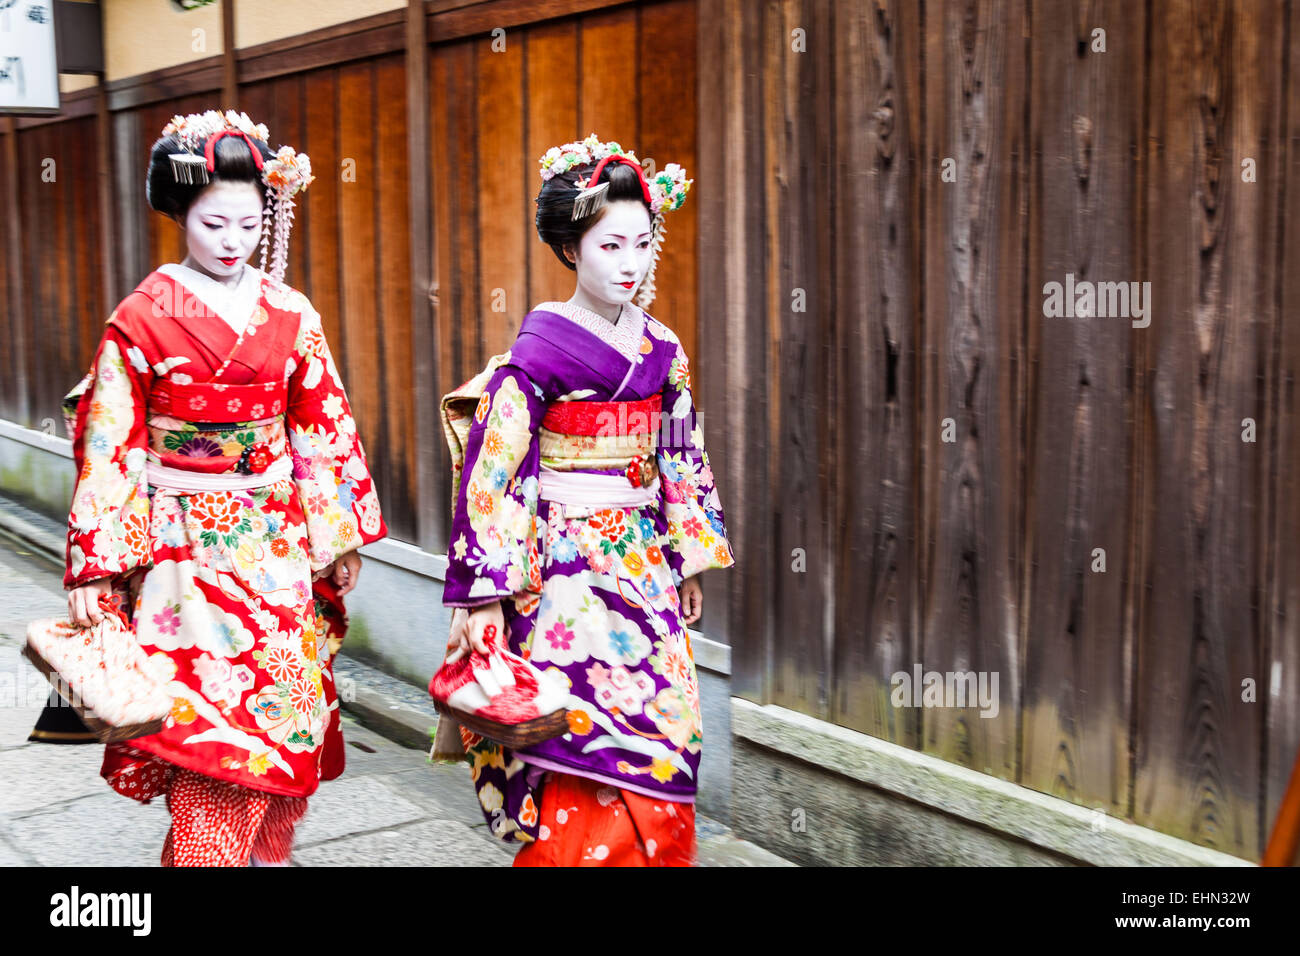 Geishas or geikos et Maikos in a street of Gion, Japan. Stock Photo